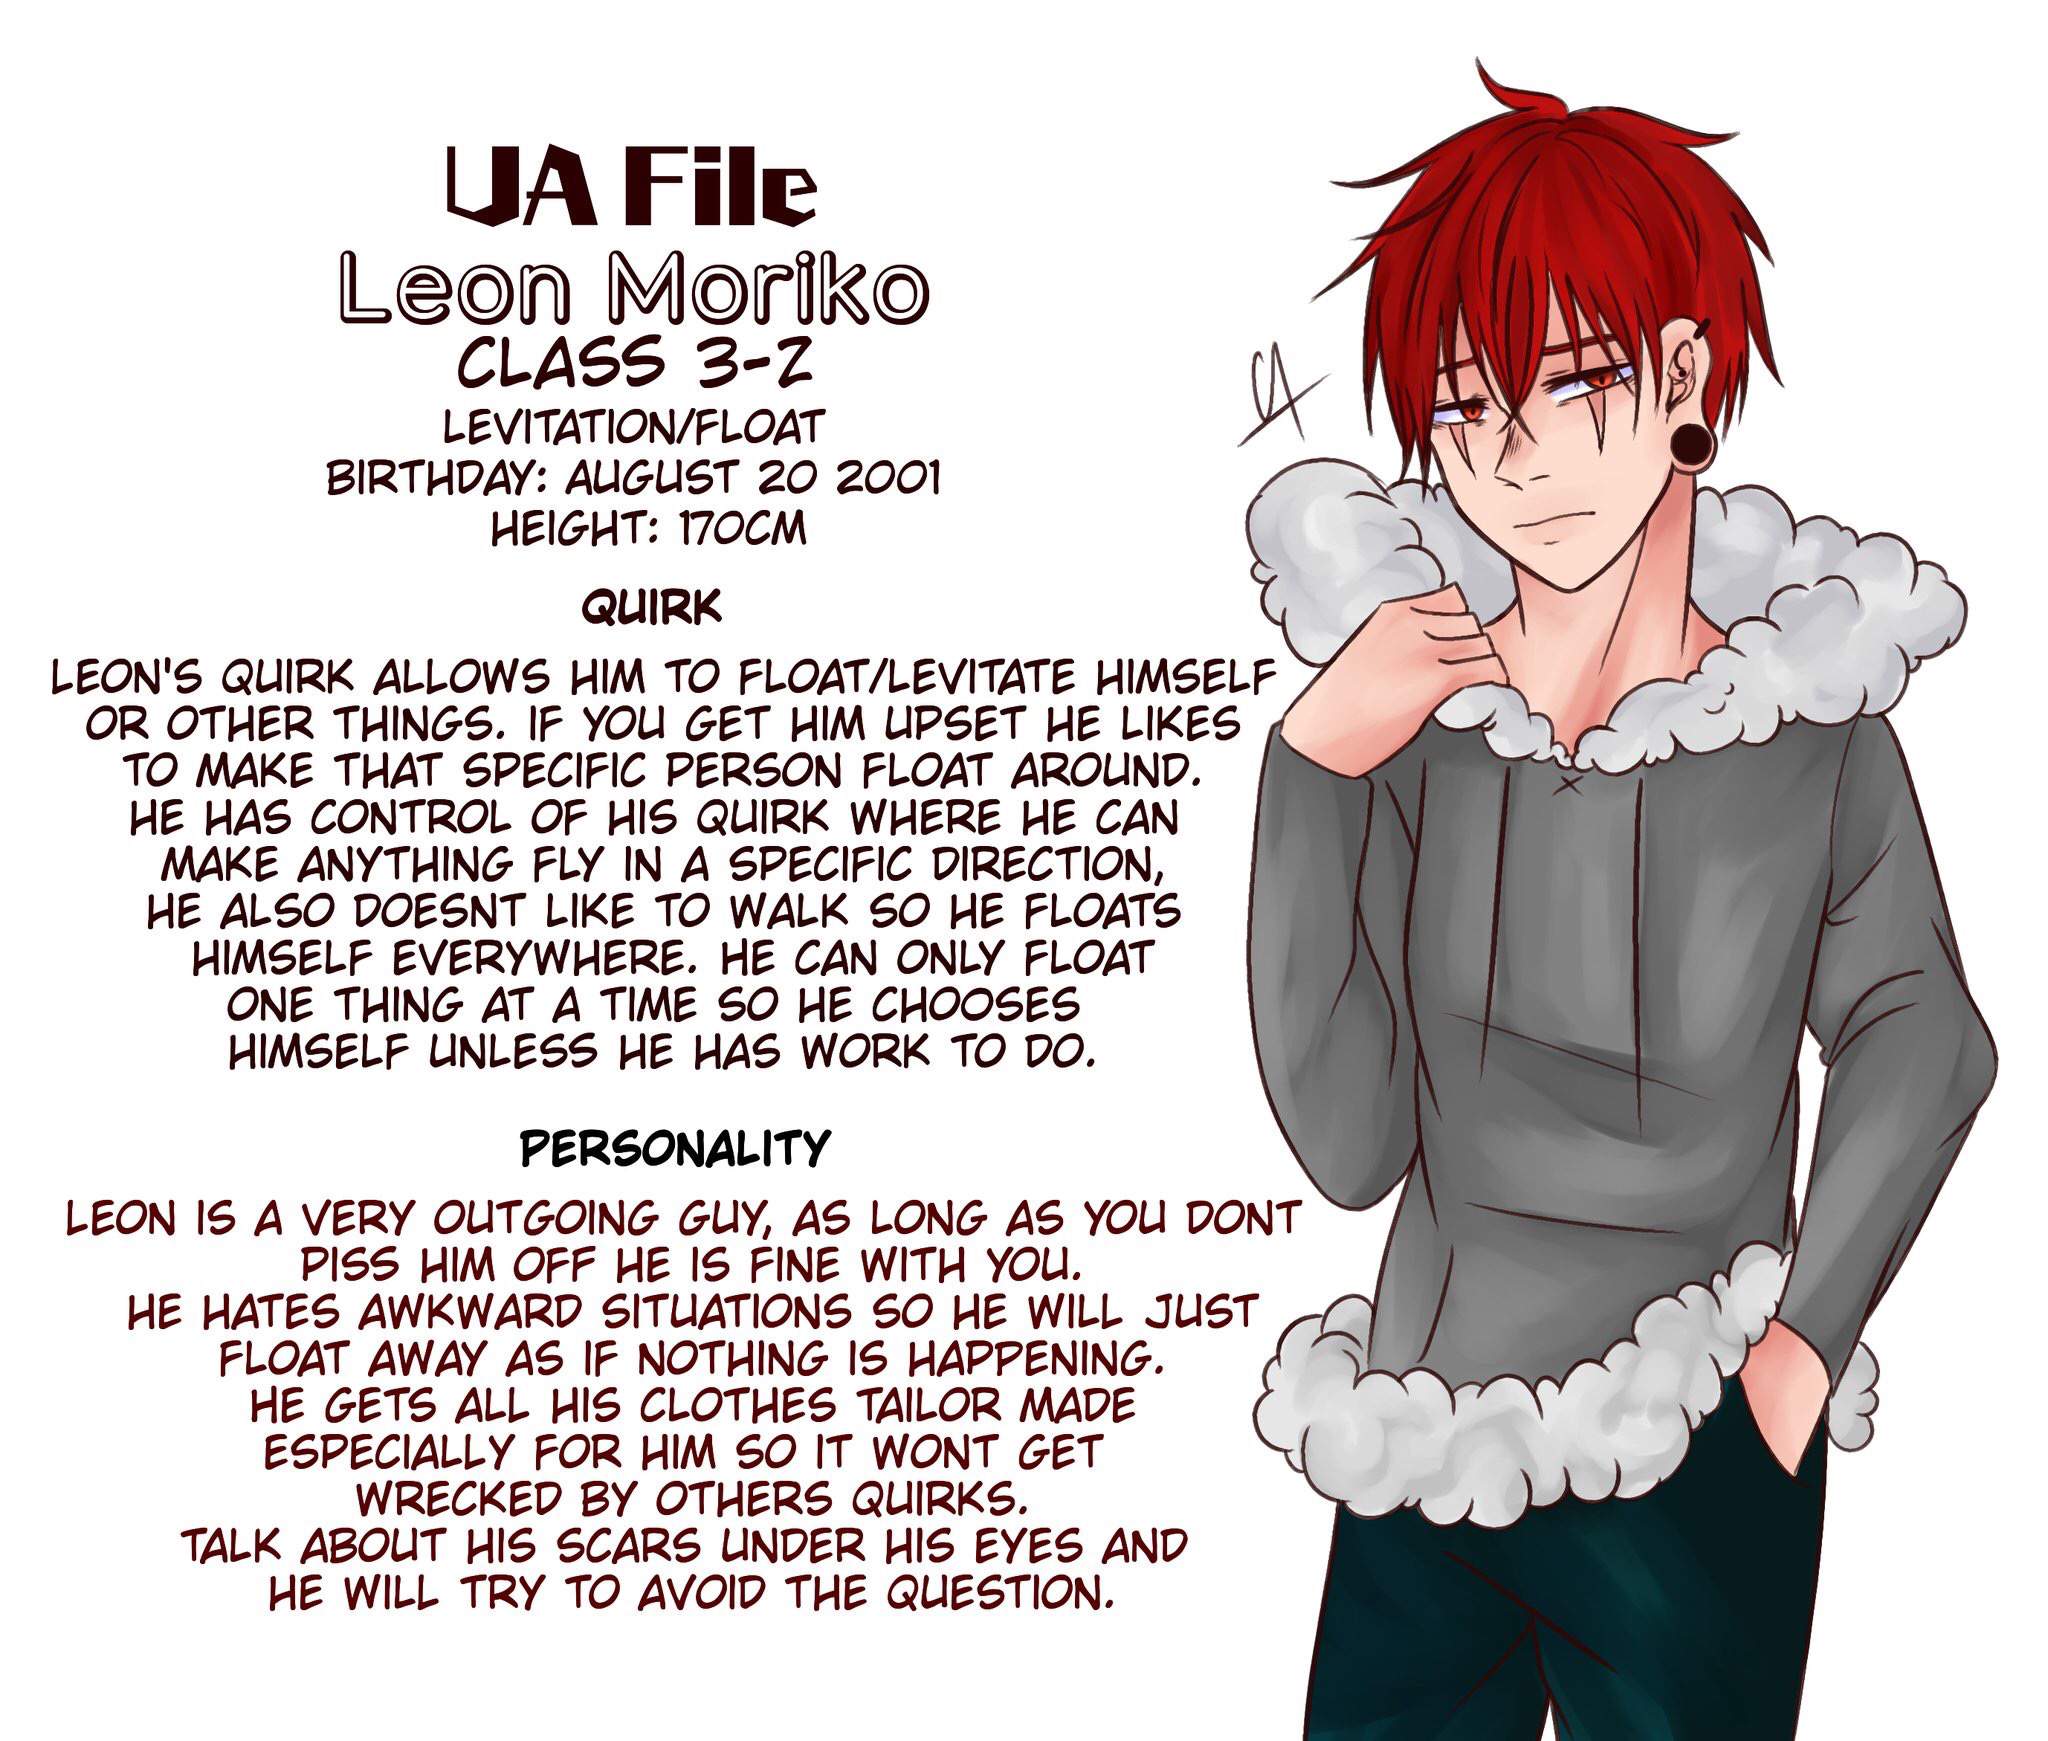 Bnha OC profiles | My Hero Academia Amino